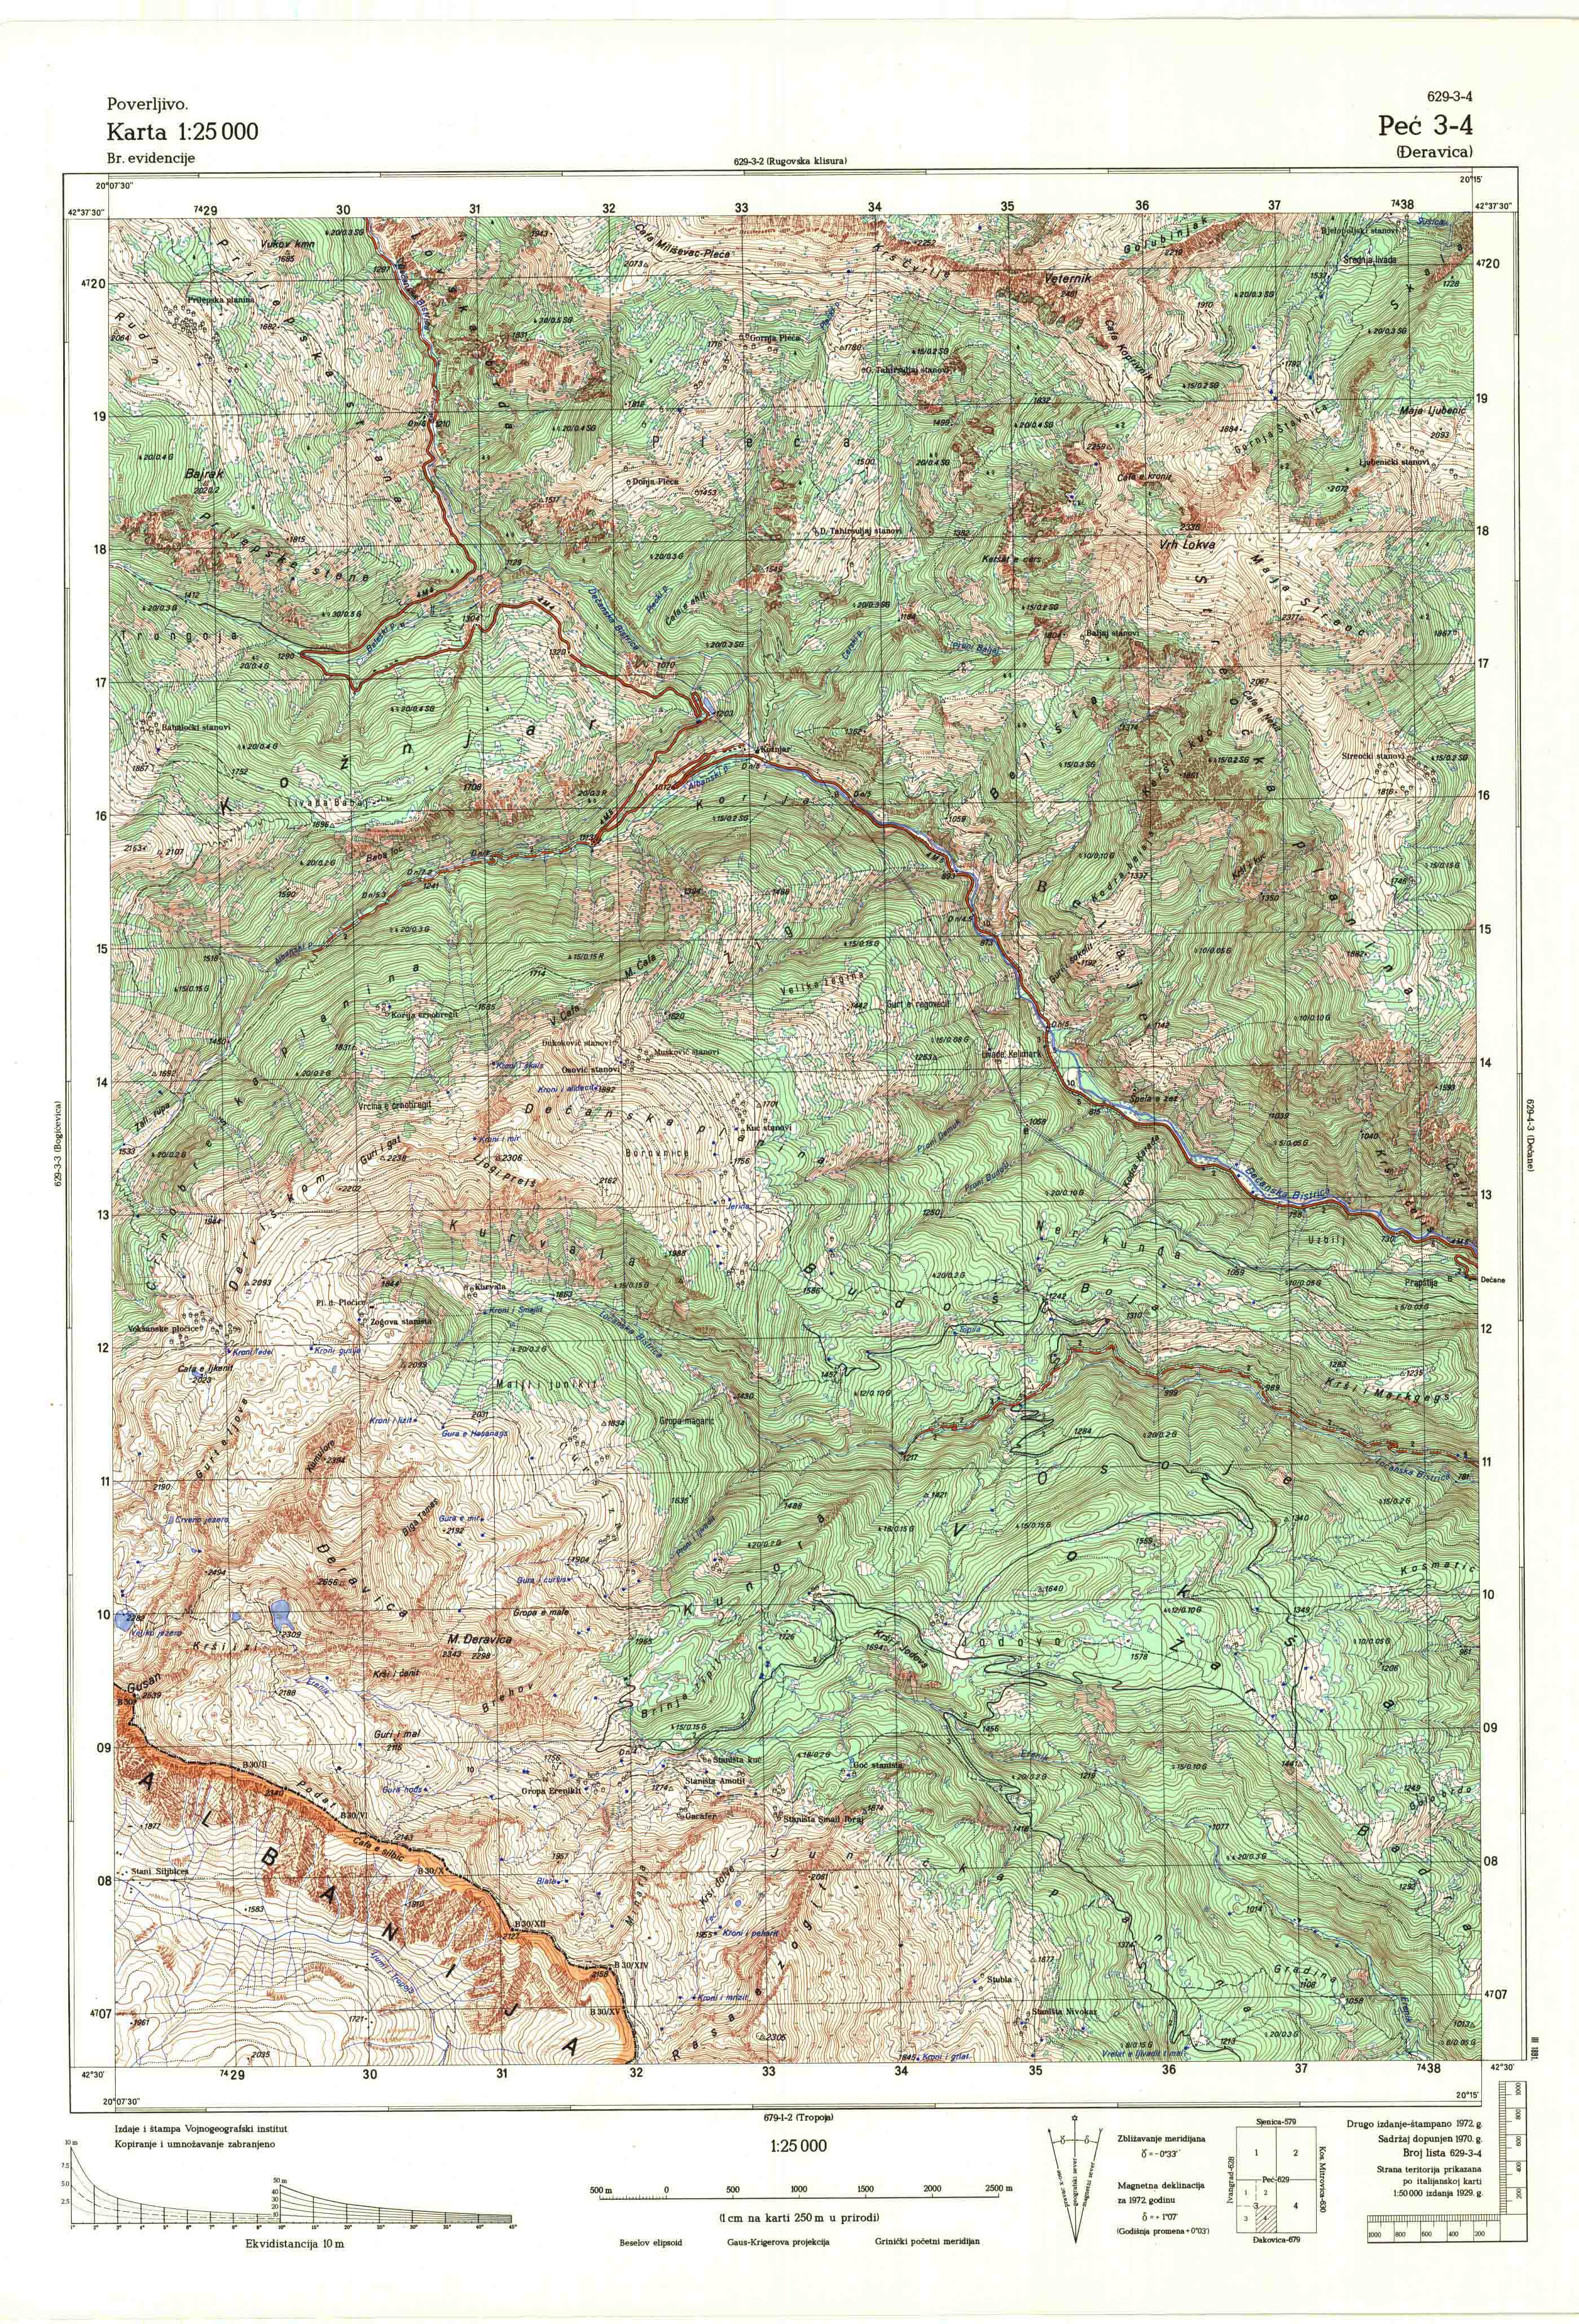  topografska karta Kosovo 25000 JNA  Peć